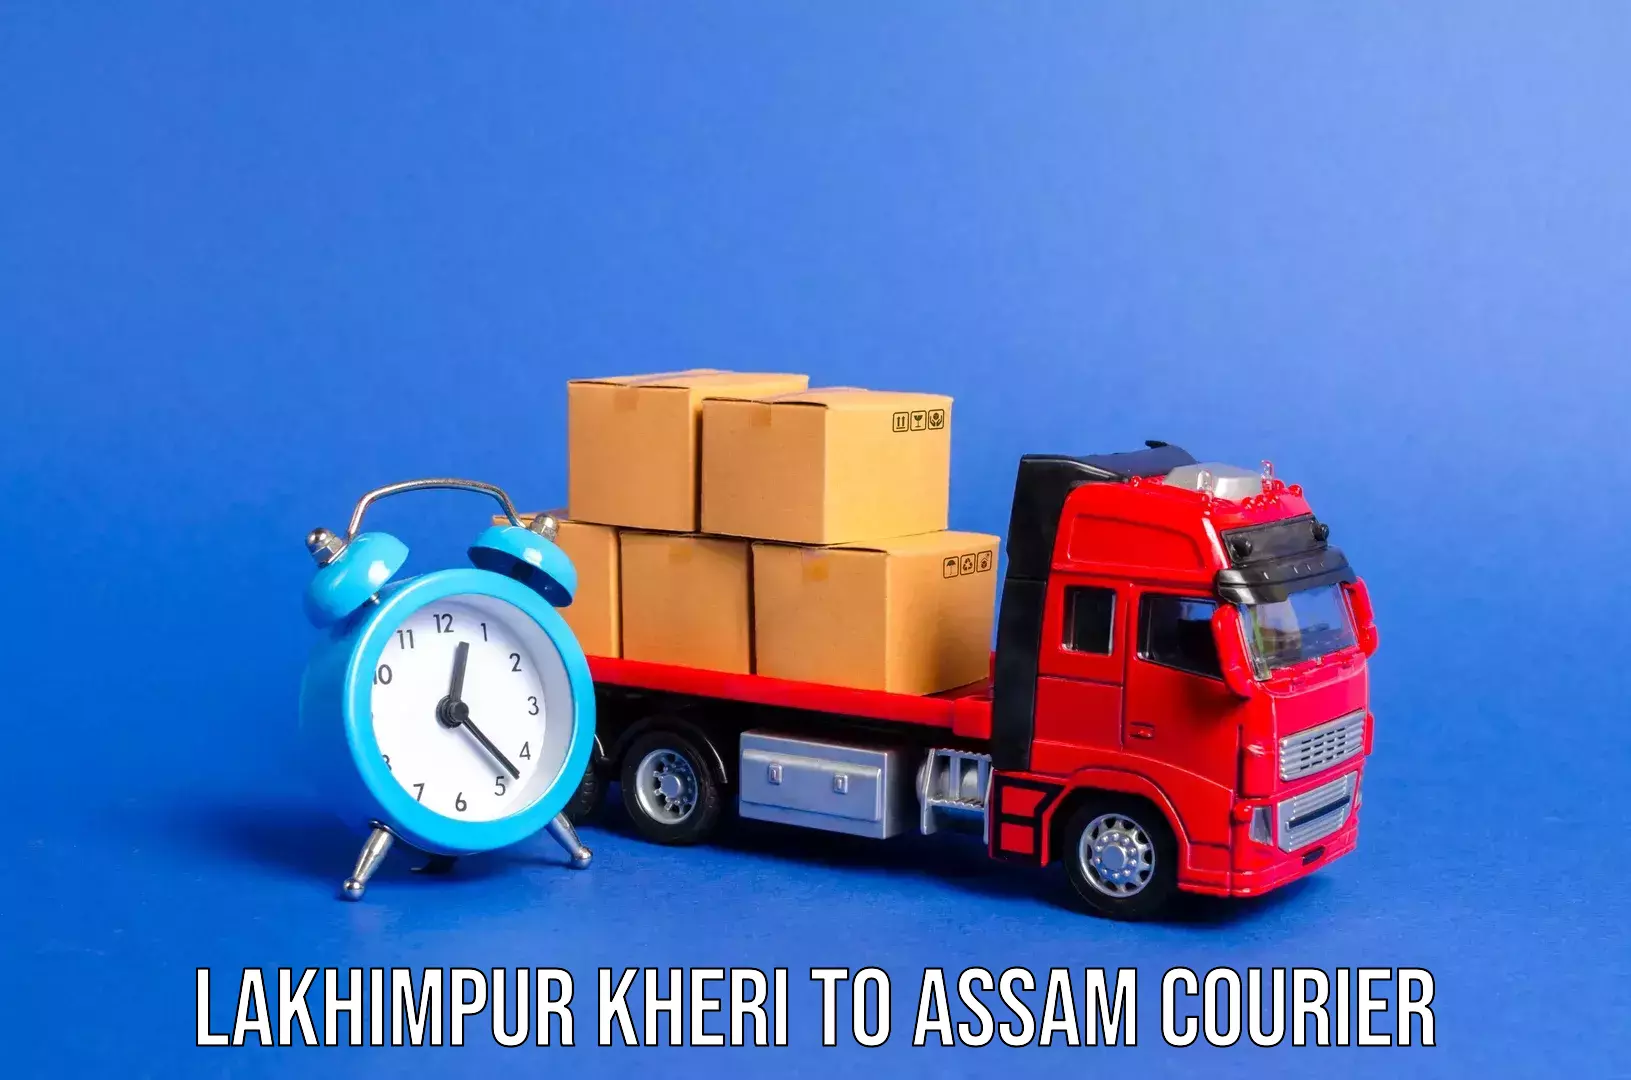 Baggage transport network Lakhimpur Kheri to Bilasipara